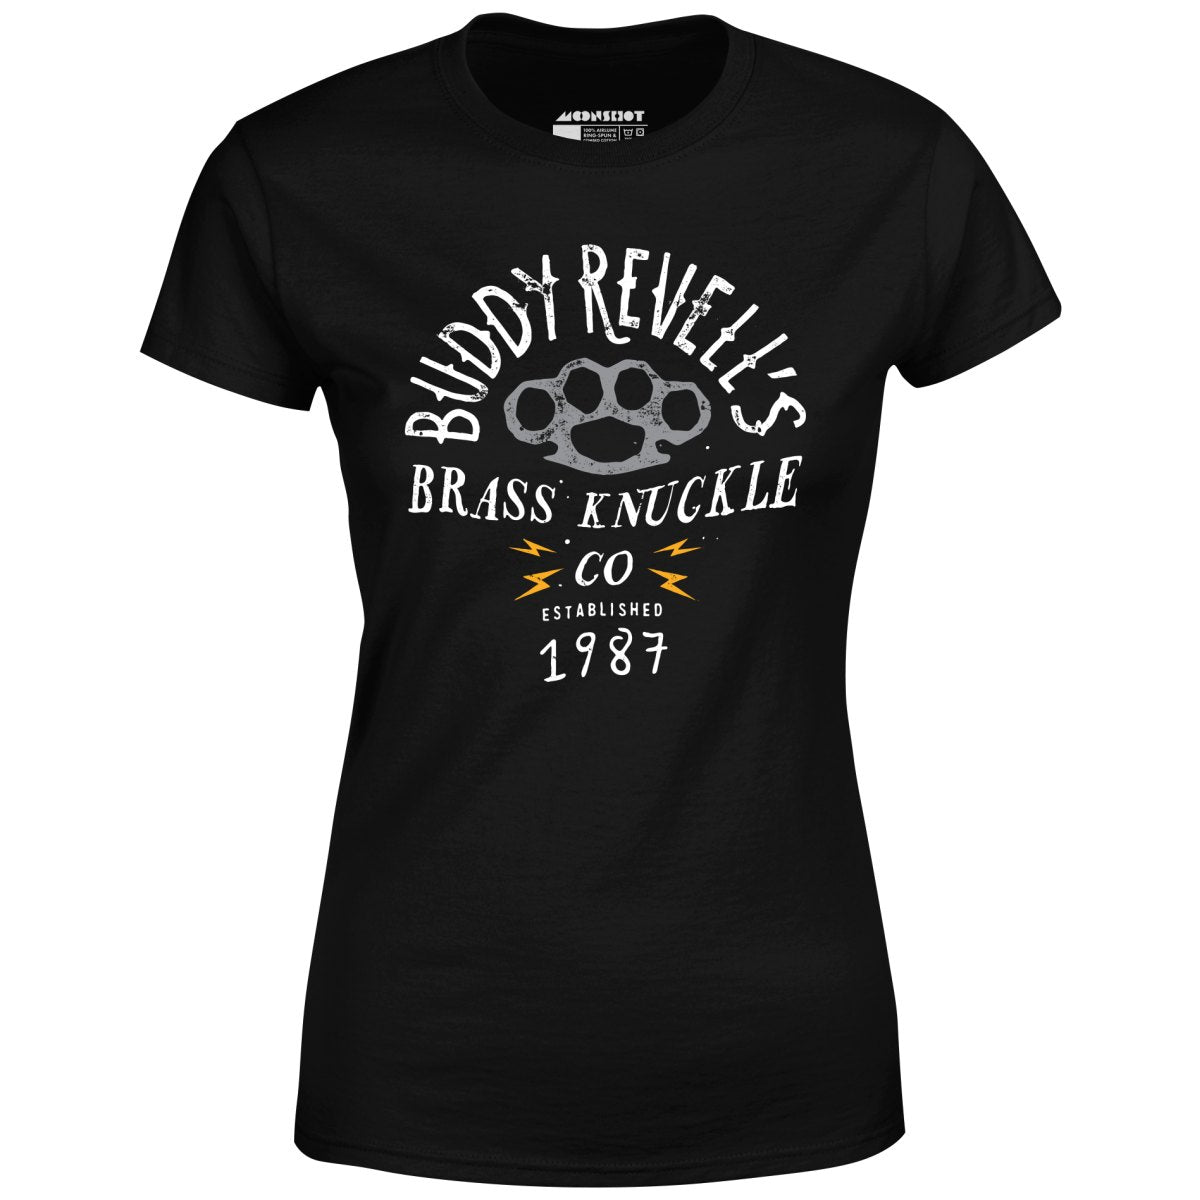 Buddy Revell's Brass Knuckle Co. - Women's T-Shirt